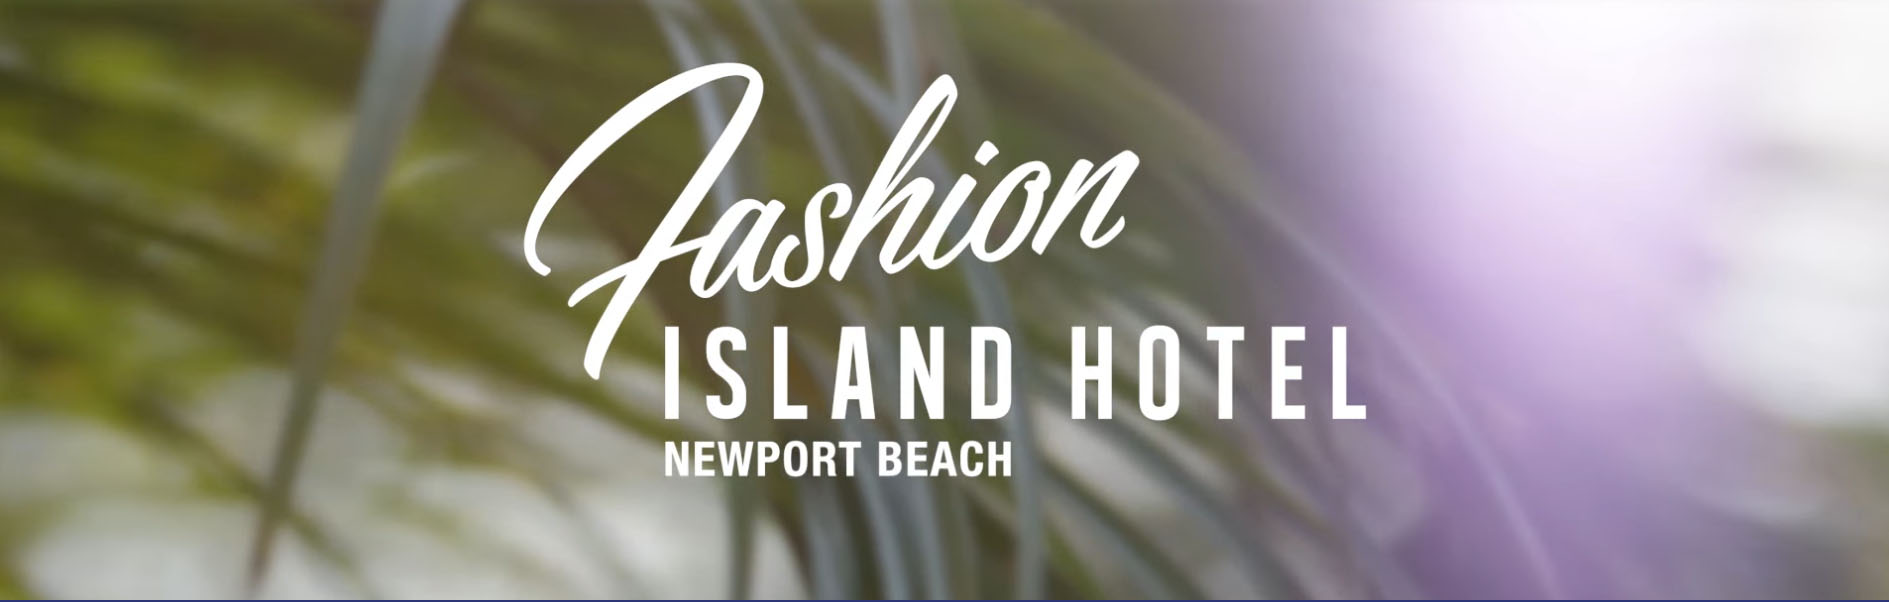 Fashion Island Hotel